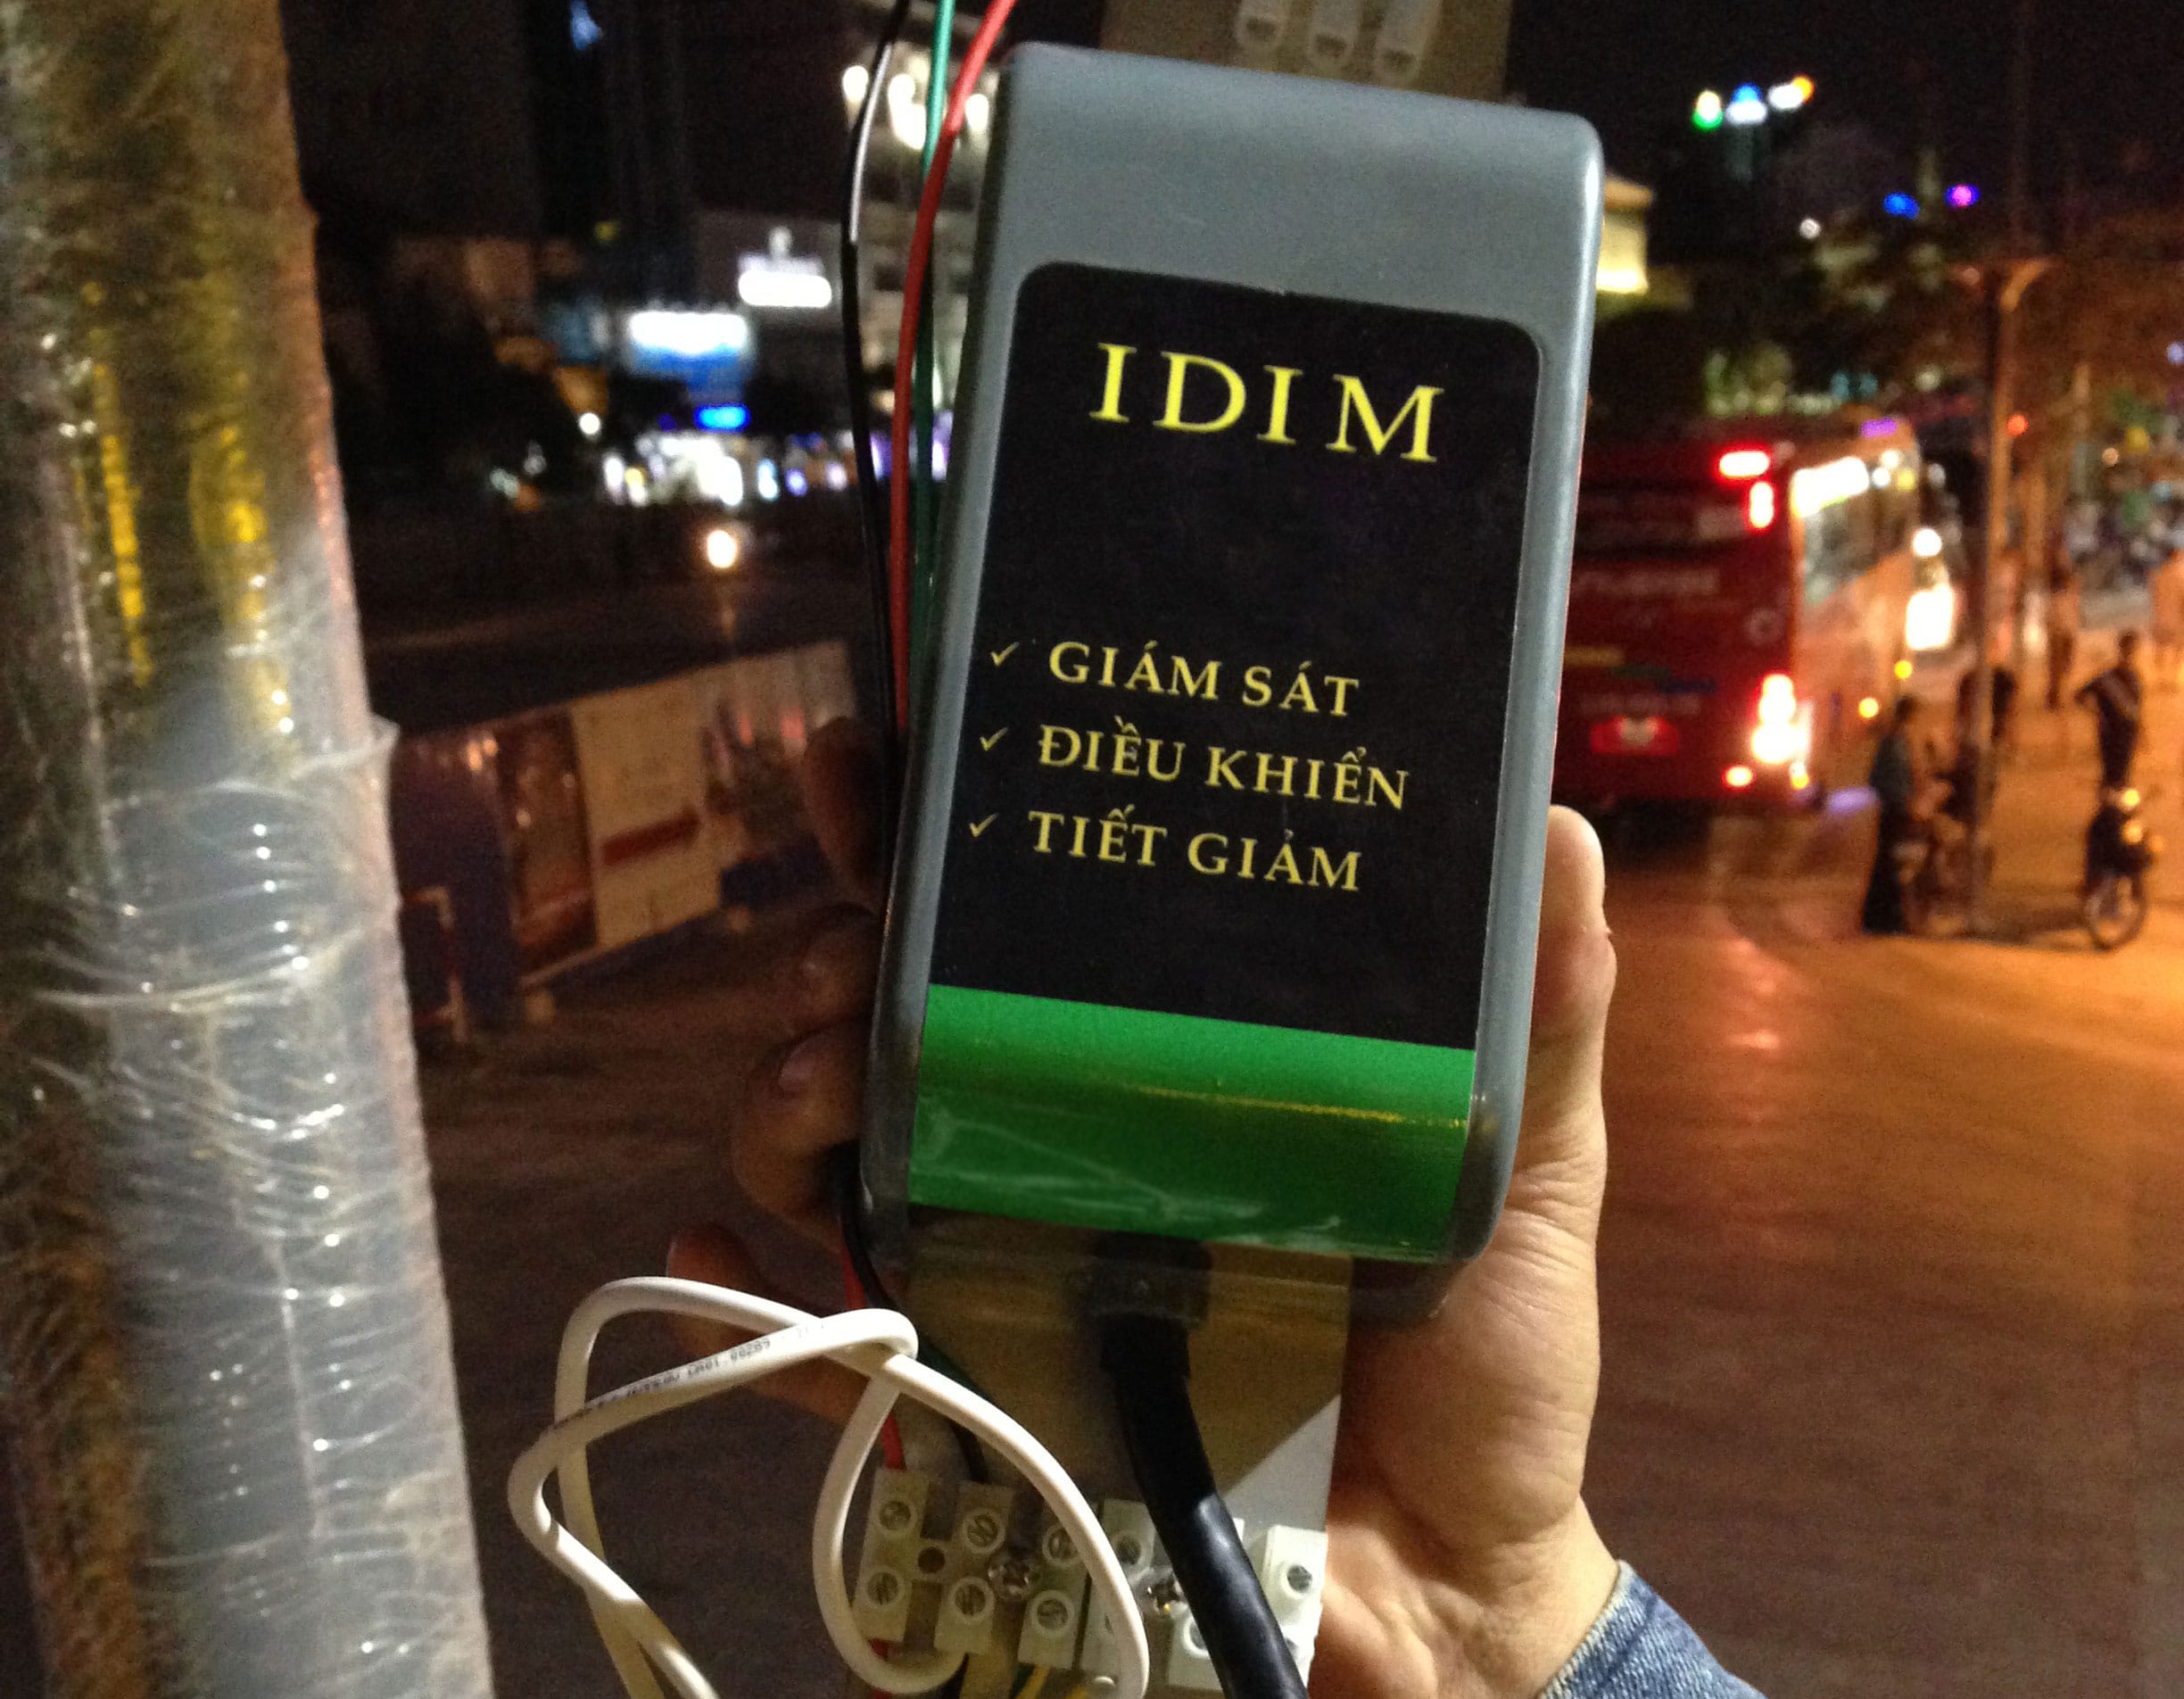 Bộ điều khiển đèn IDIM